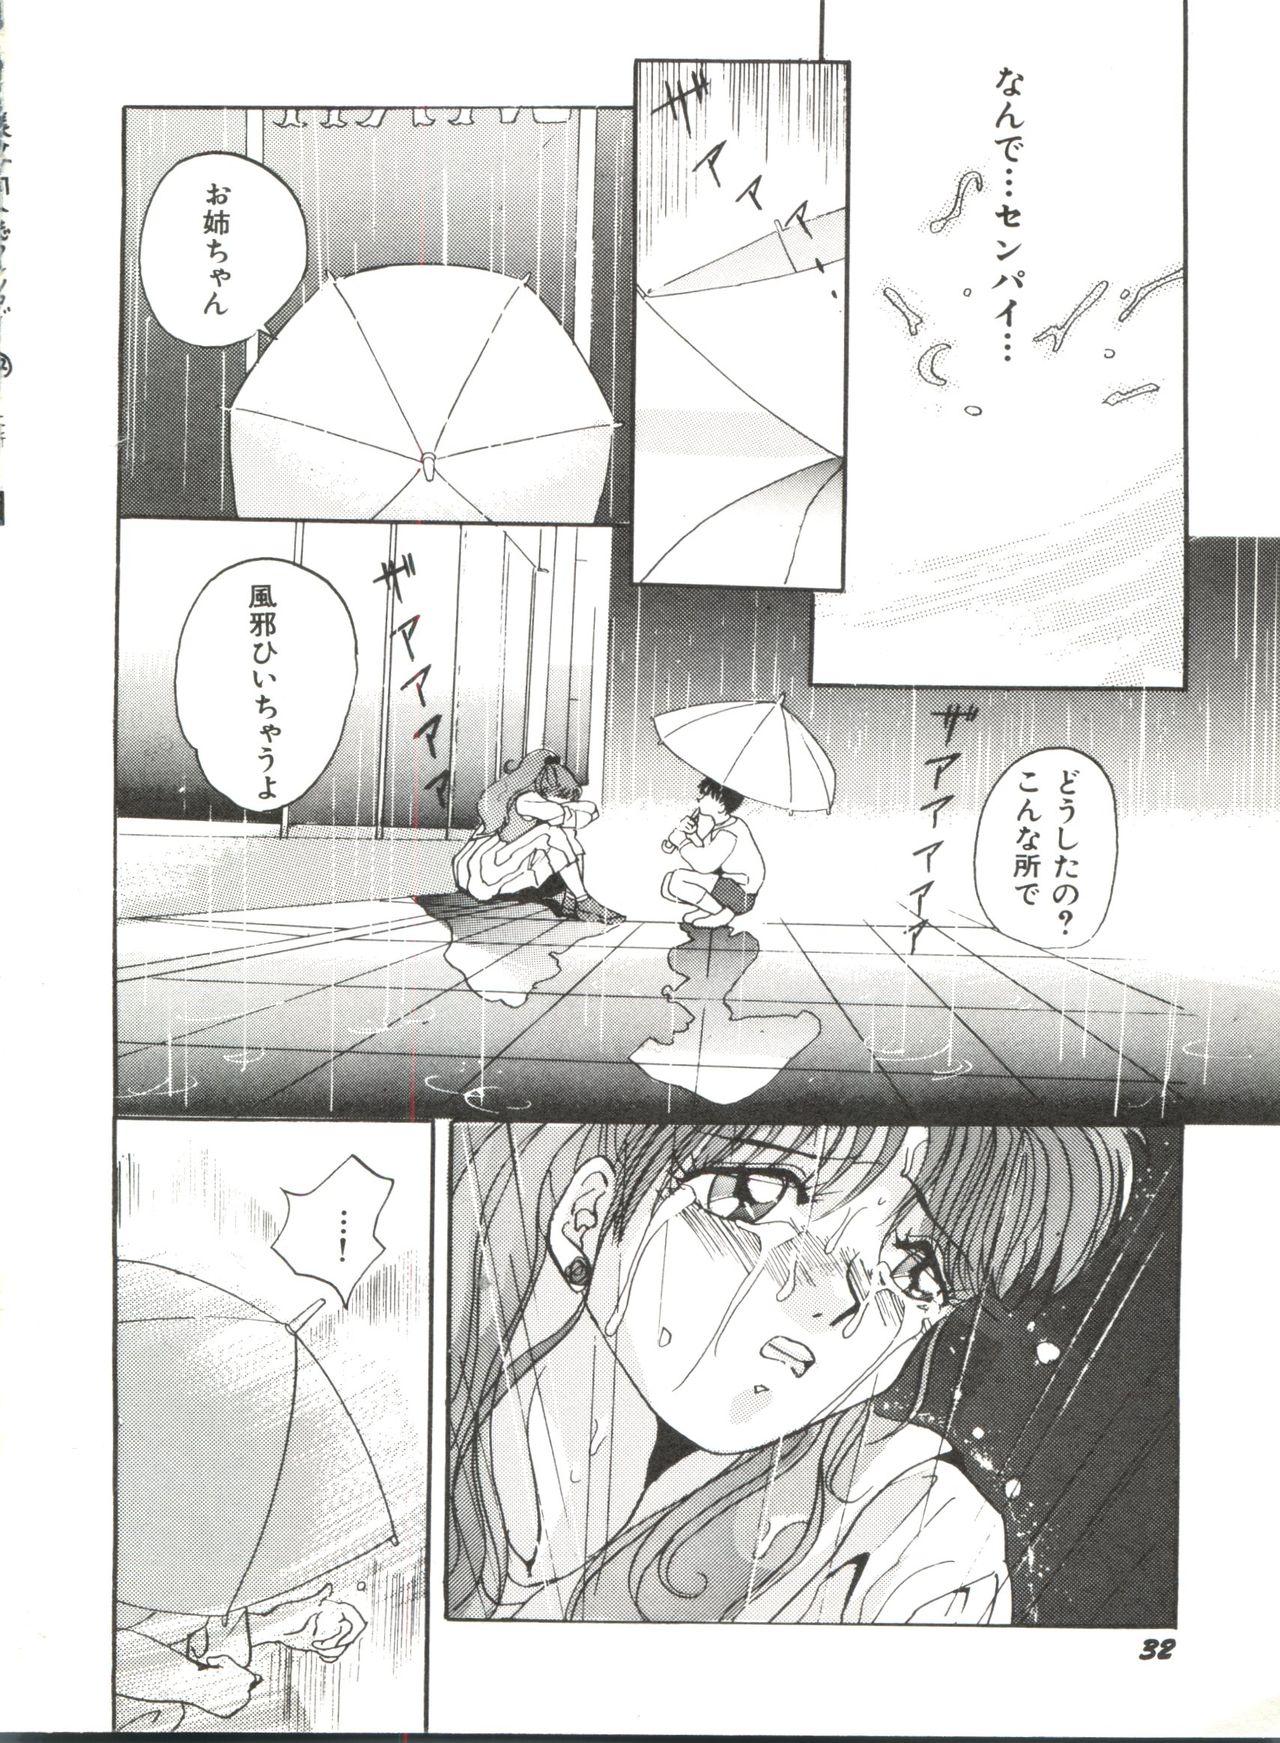 Bishoujo Doujinshi Anthology 12 - Moon Paradise 7 Tsuki no Rakuen 36